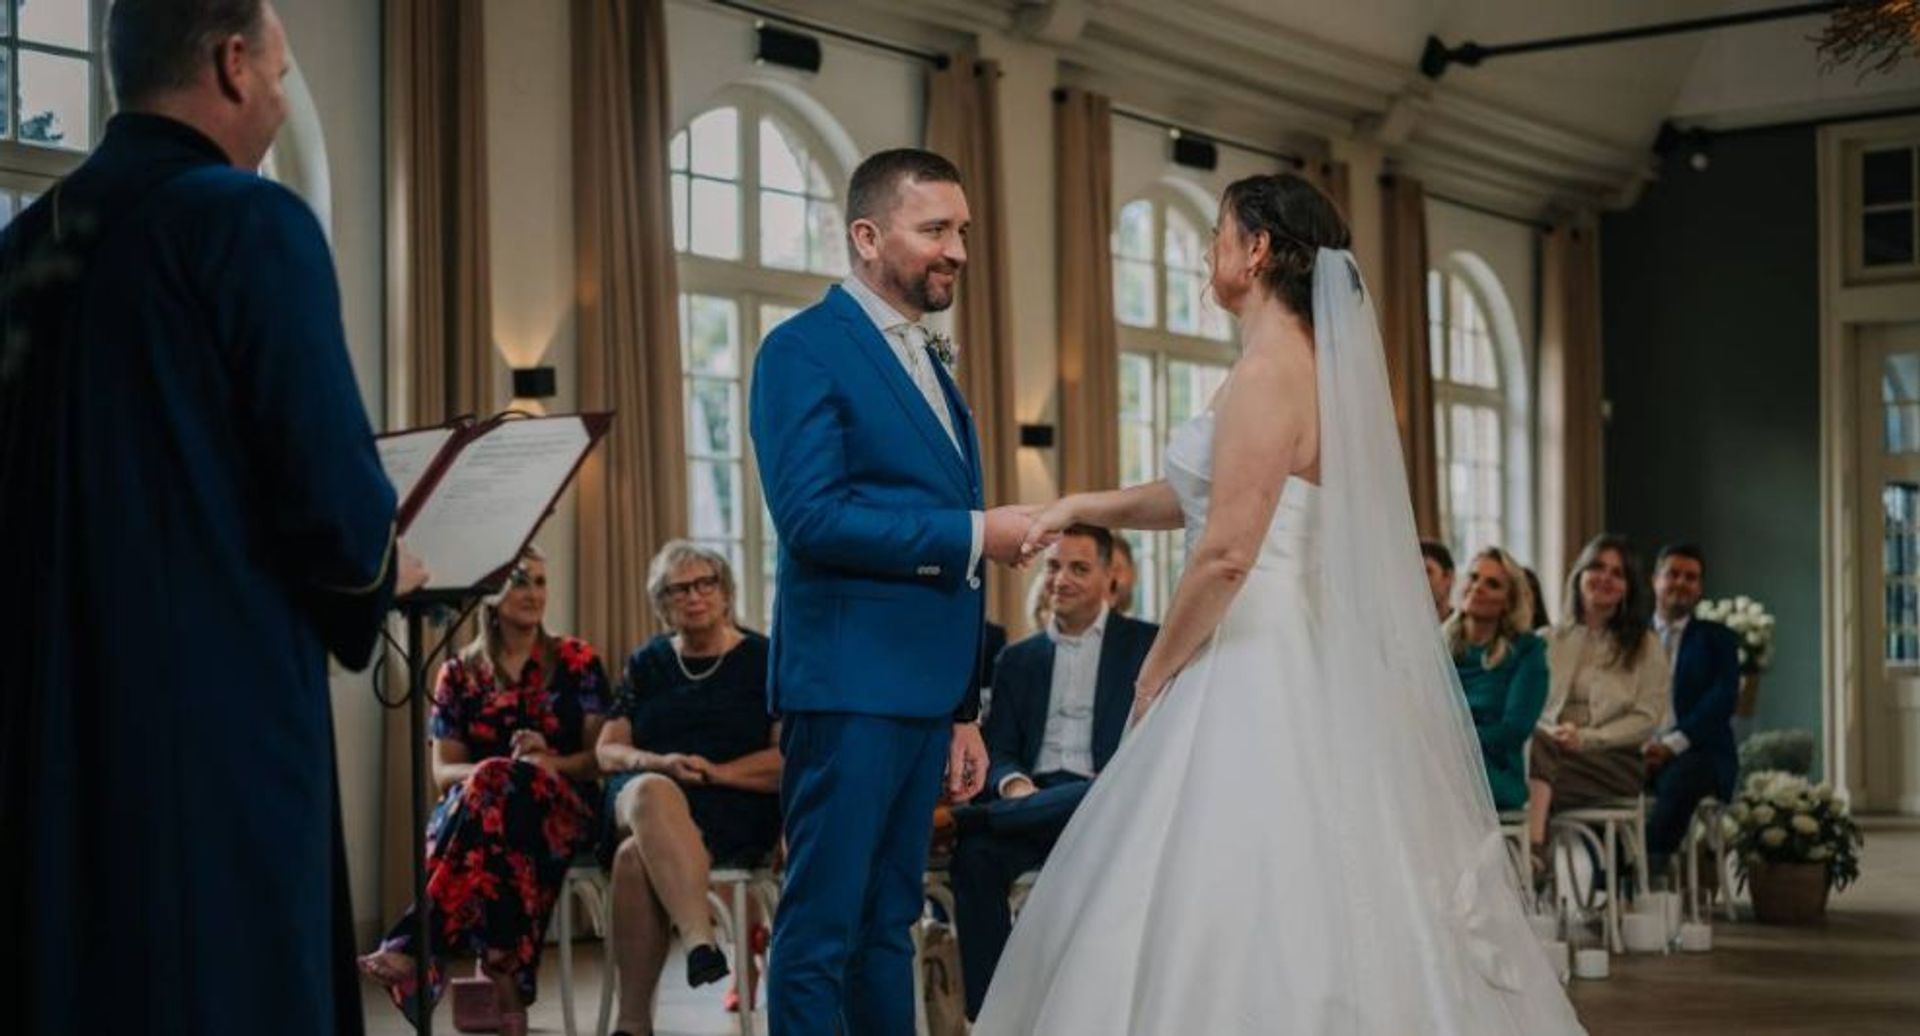 married-at-first-sight-bastiaan-uit-elkaar